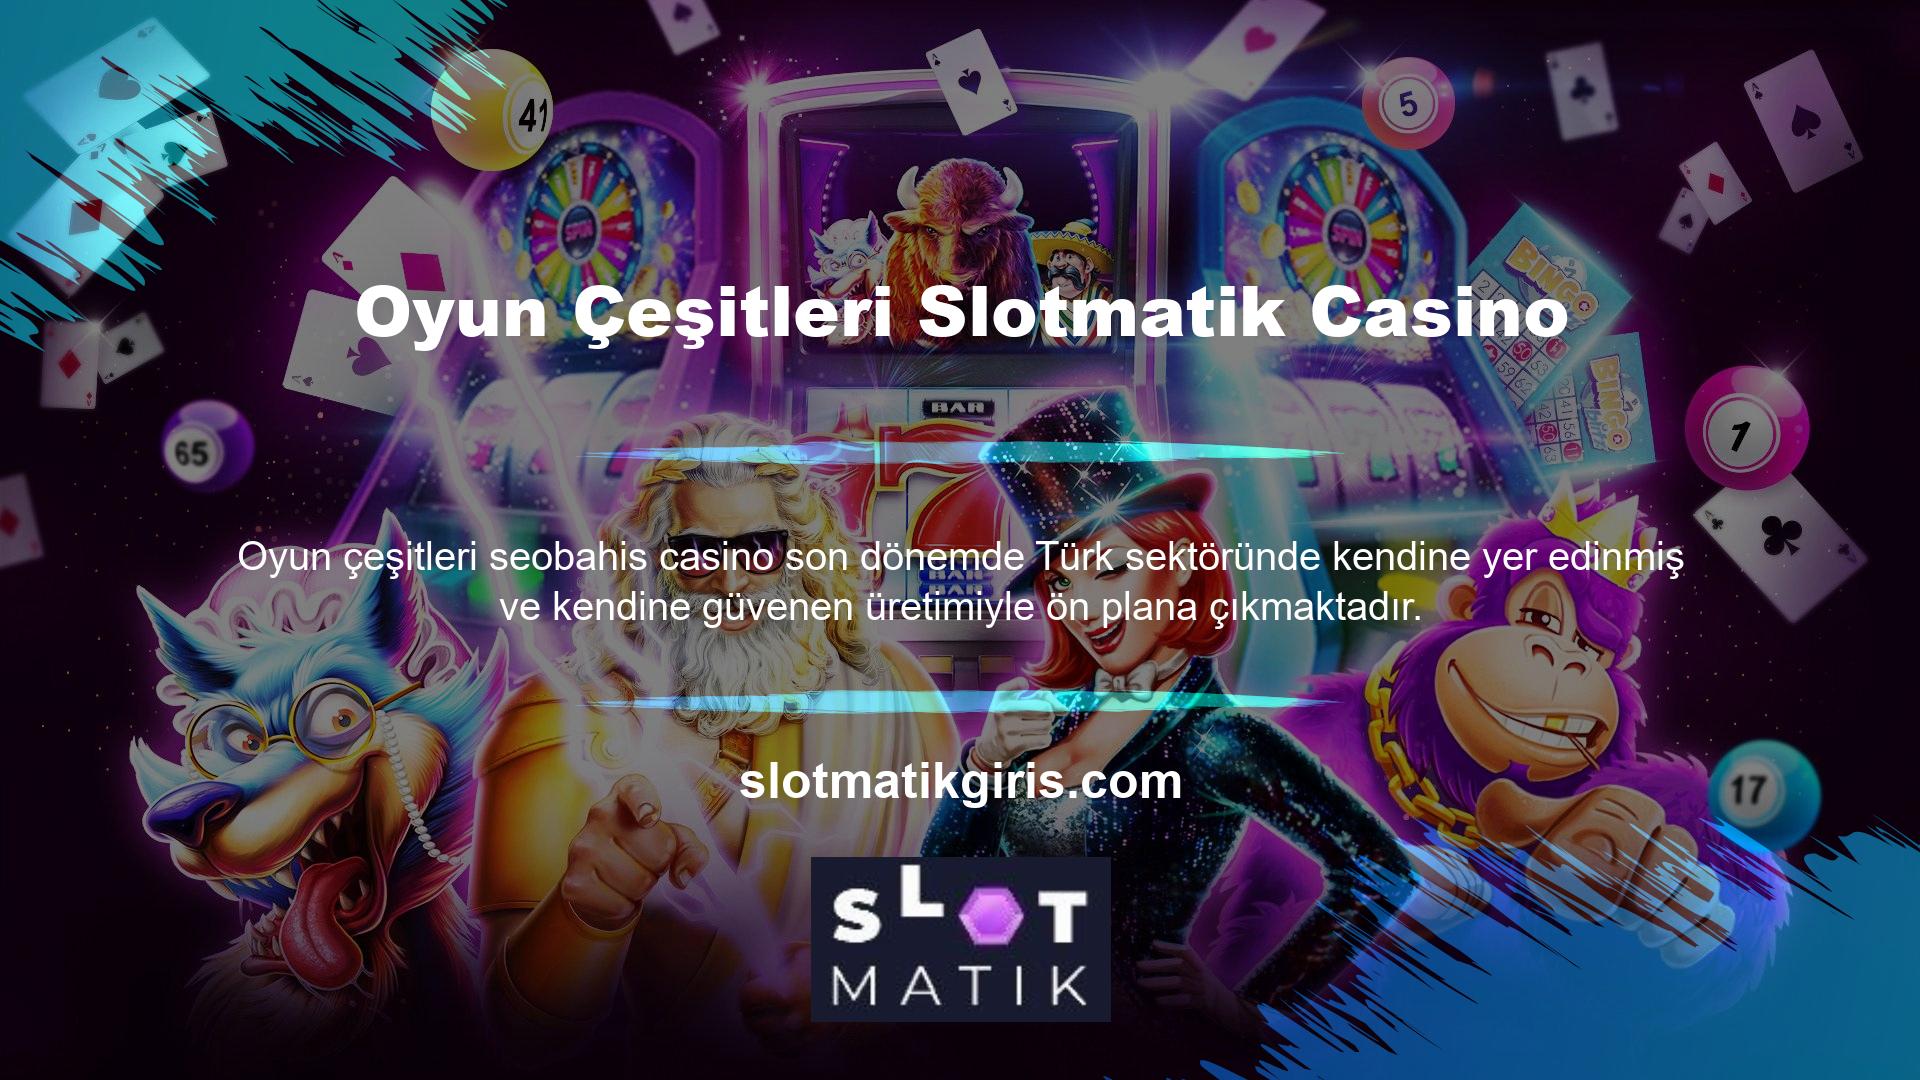 Slotmatik, Canlı Bahis, Spor, Canlı Casino, Casino, Poker, Slotmatik Connection, Canlı Bingo, Sanal Bahis ve daha fazlası dahil olmak üzere birçok oyun türü sunmaktadır